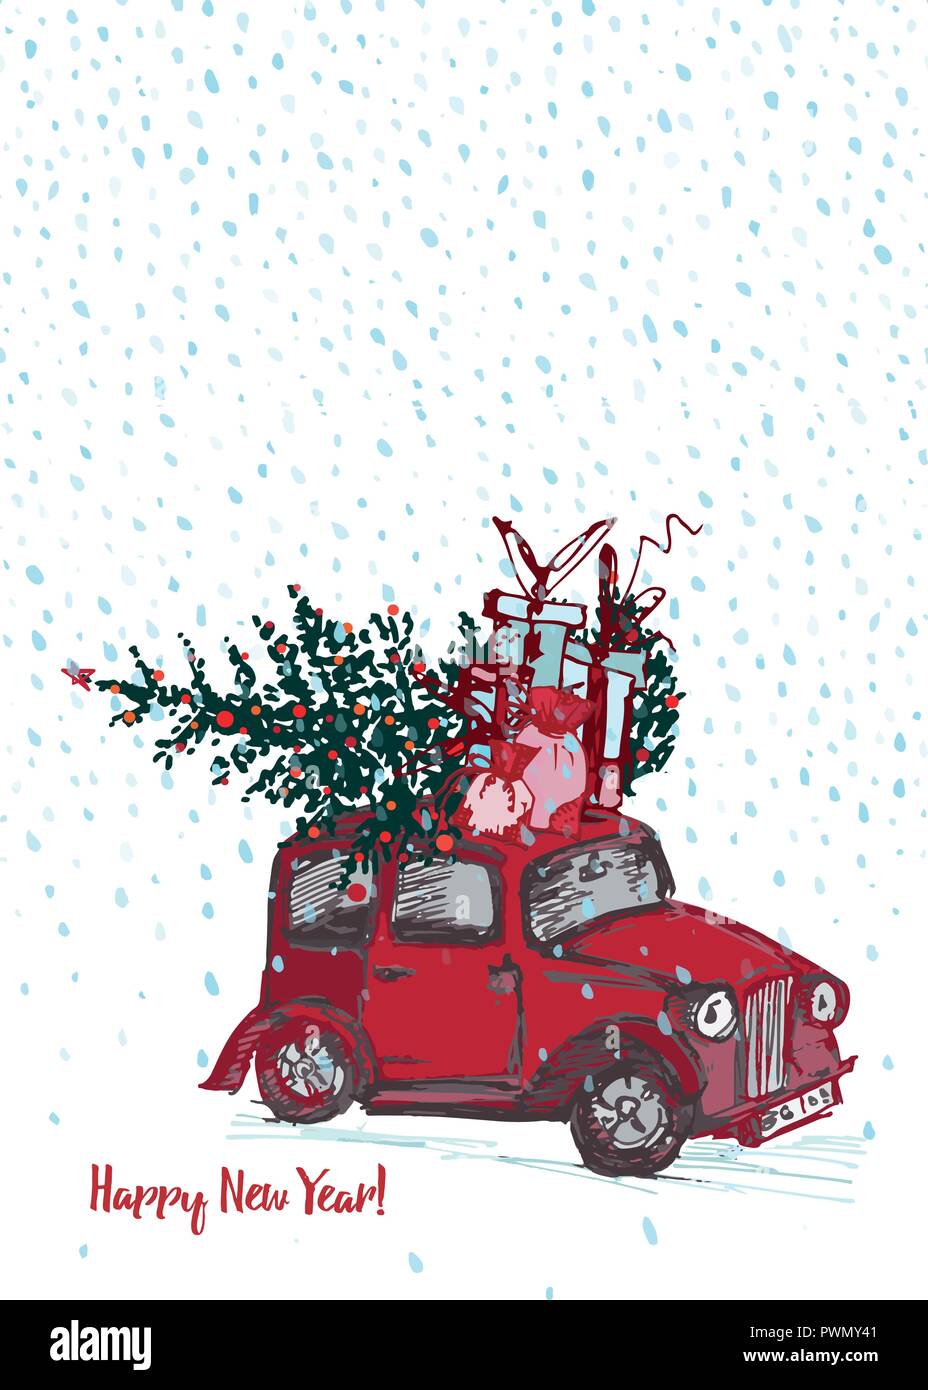 Festliche Neues Jahr 19 Karte Rotes Auto Mit Tannenbaum Dekoriert Rote Kugeln Auf Weissem Hintergrund Stock Vektorgrafik Alamy